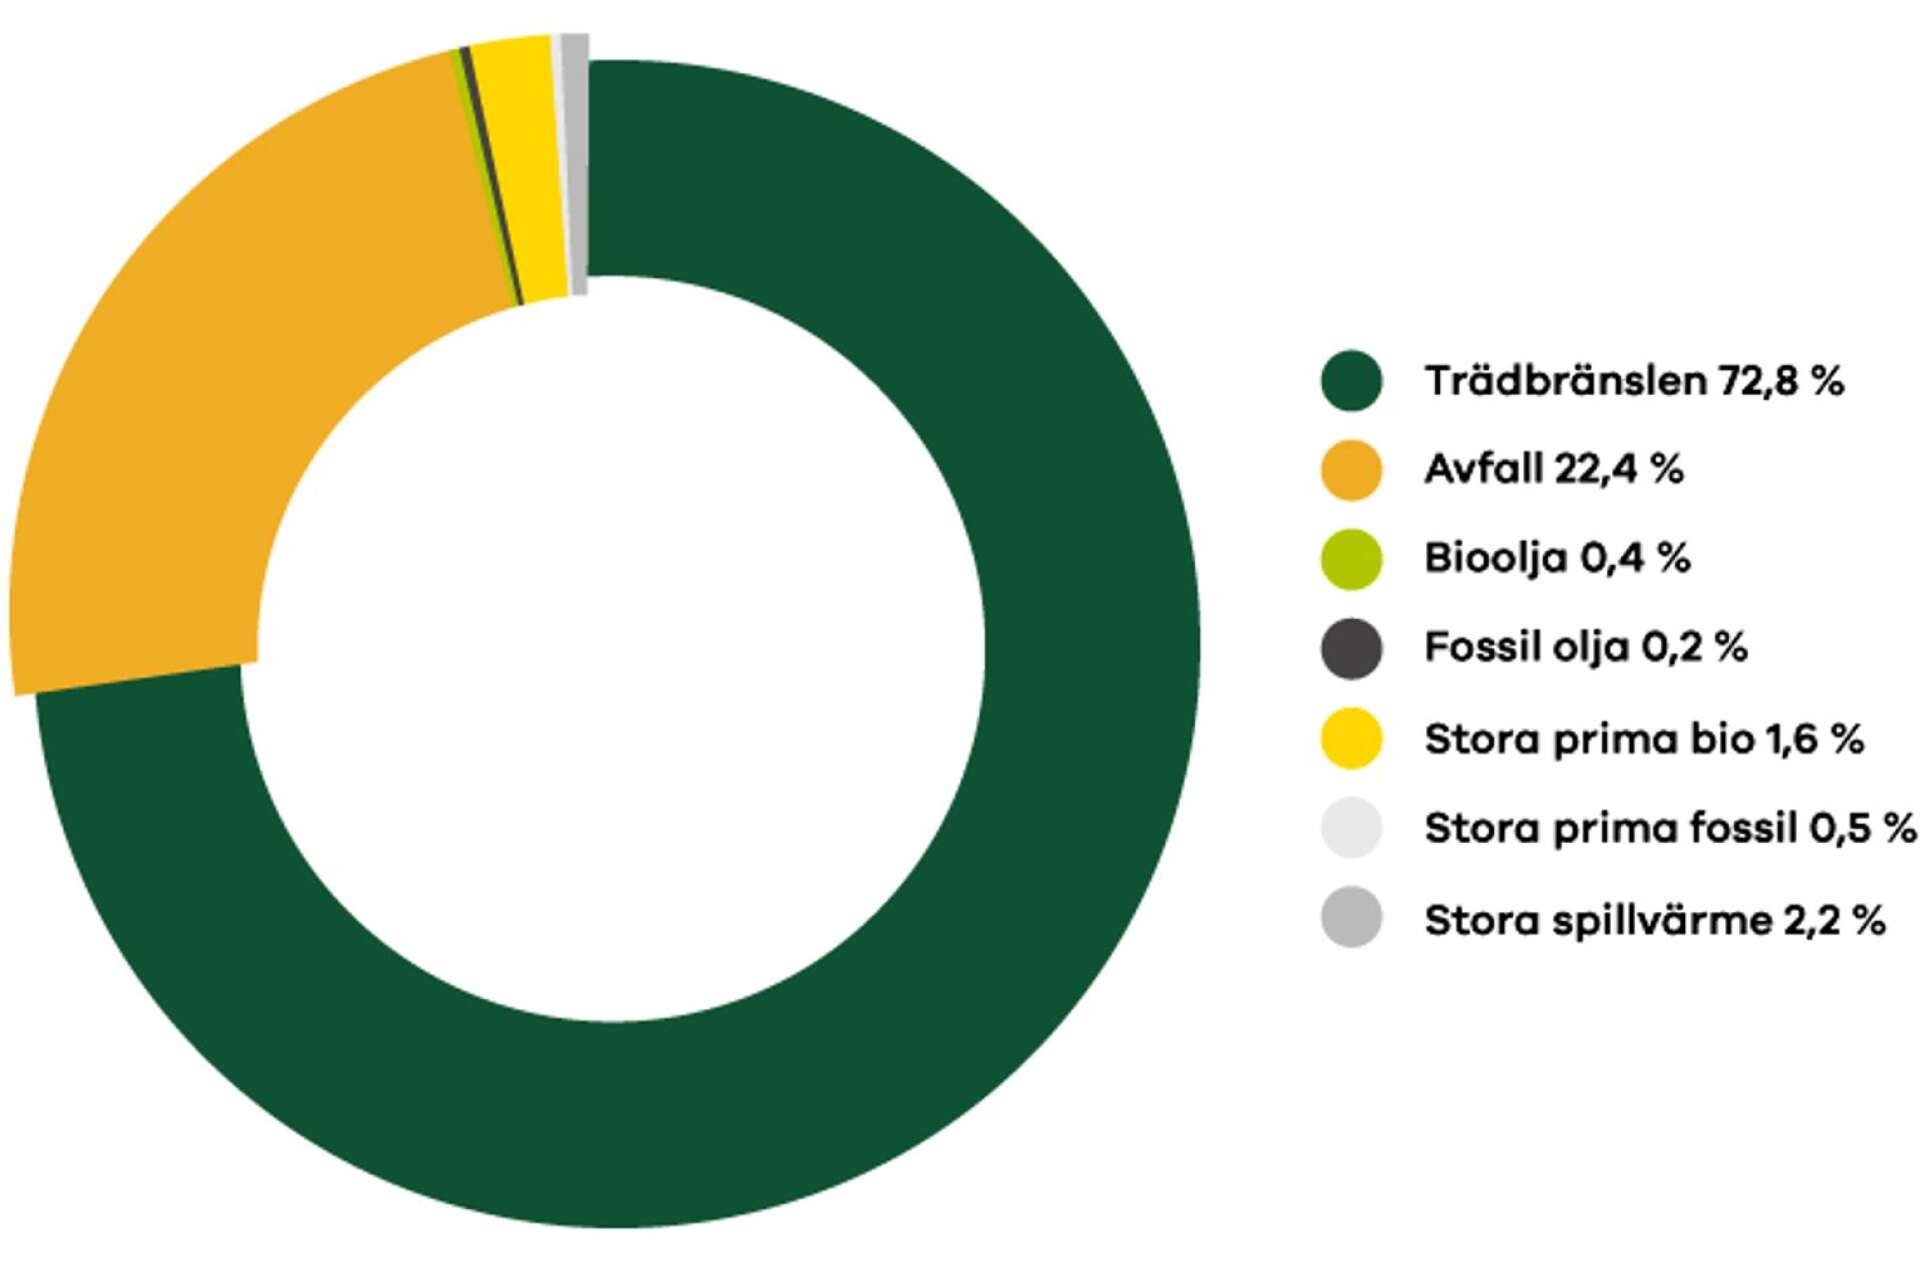 Över 72 procent av råvaran i energiproduktionen vid Karlstads Energi kommer från trädbränslen.